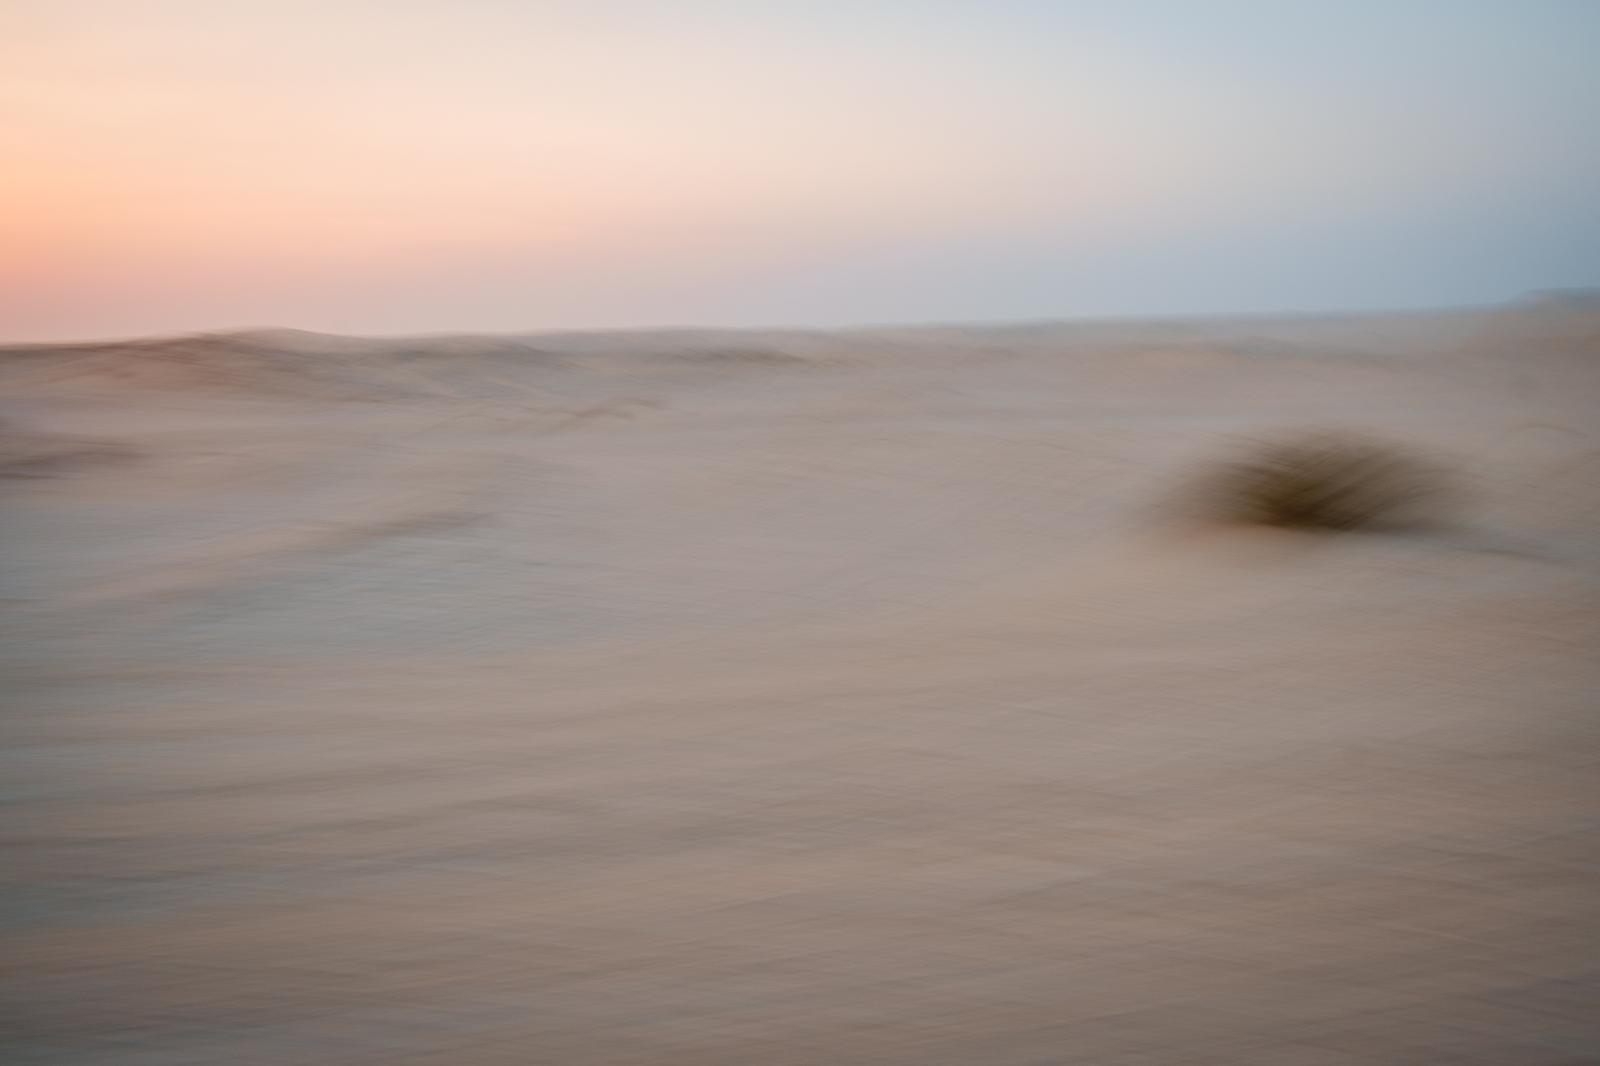 Desert Landscape | Buy this image